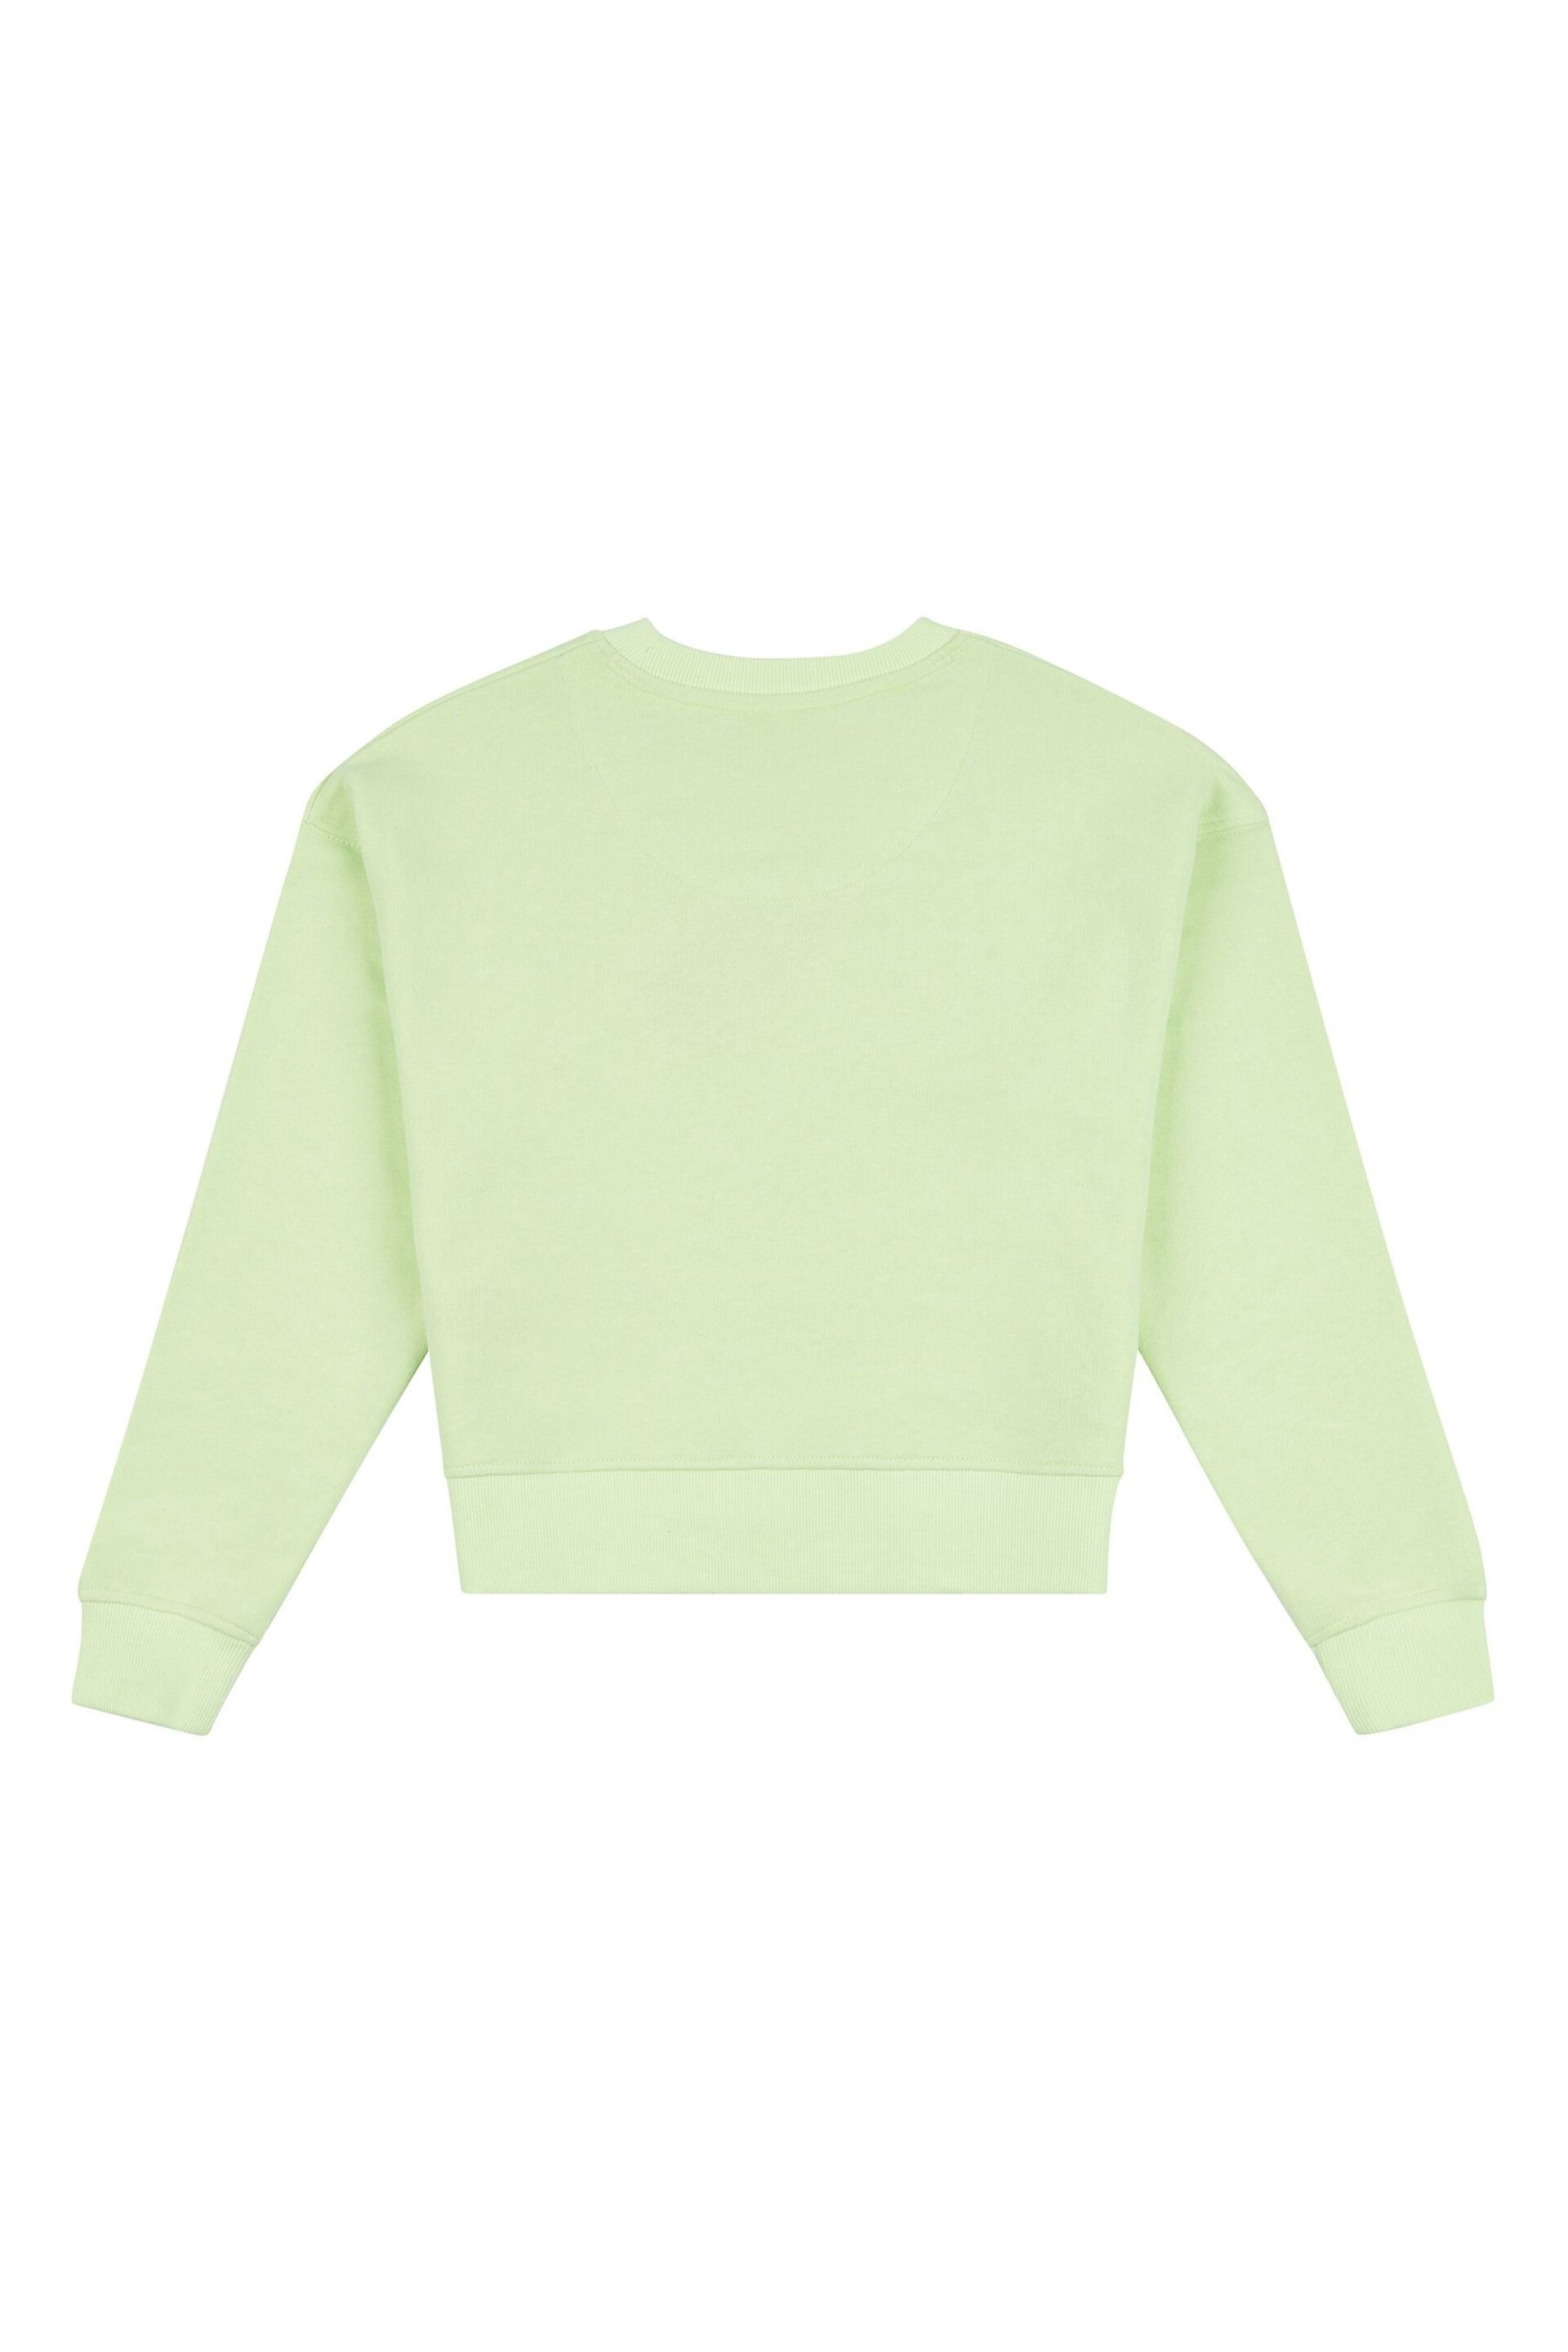 Jack Wills Loose Fit Girls Green Huntston Crew Sweatshirt - Image 6 of 7